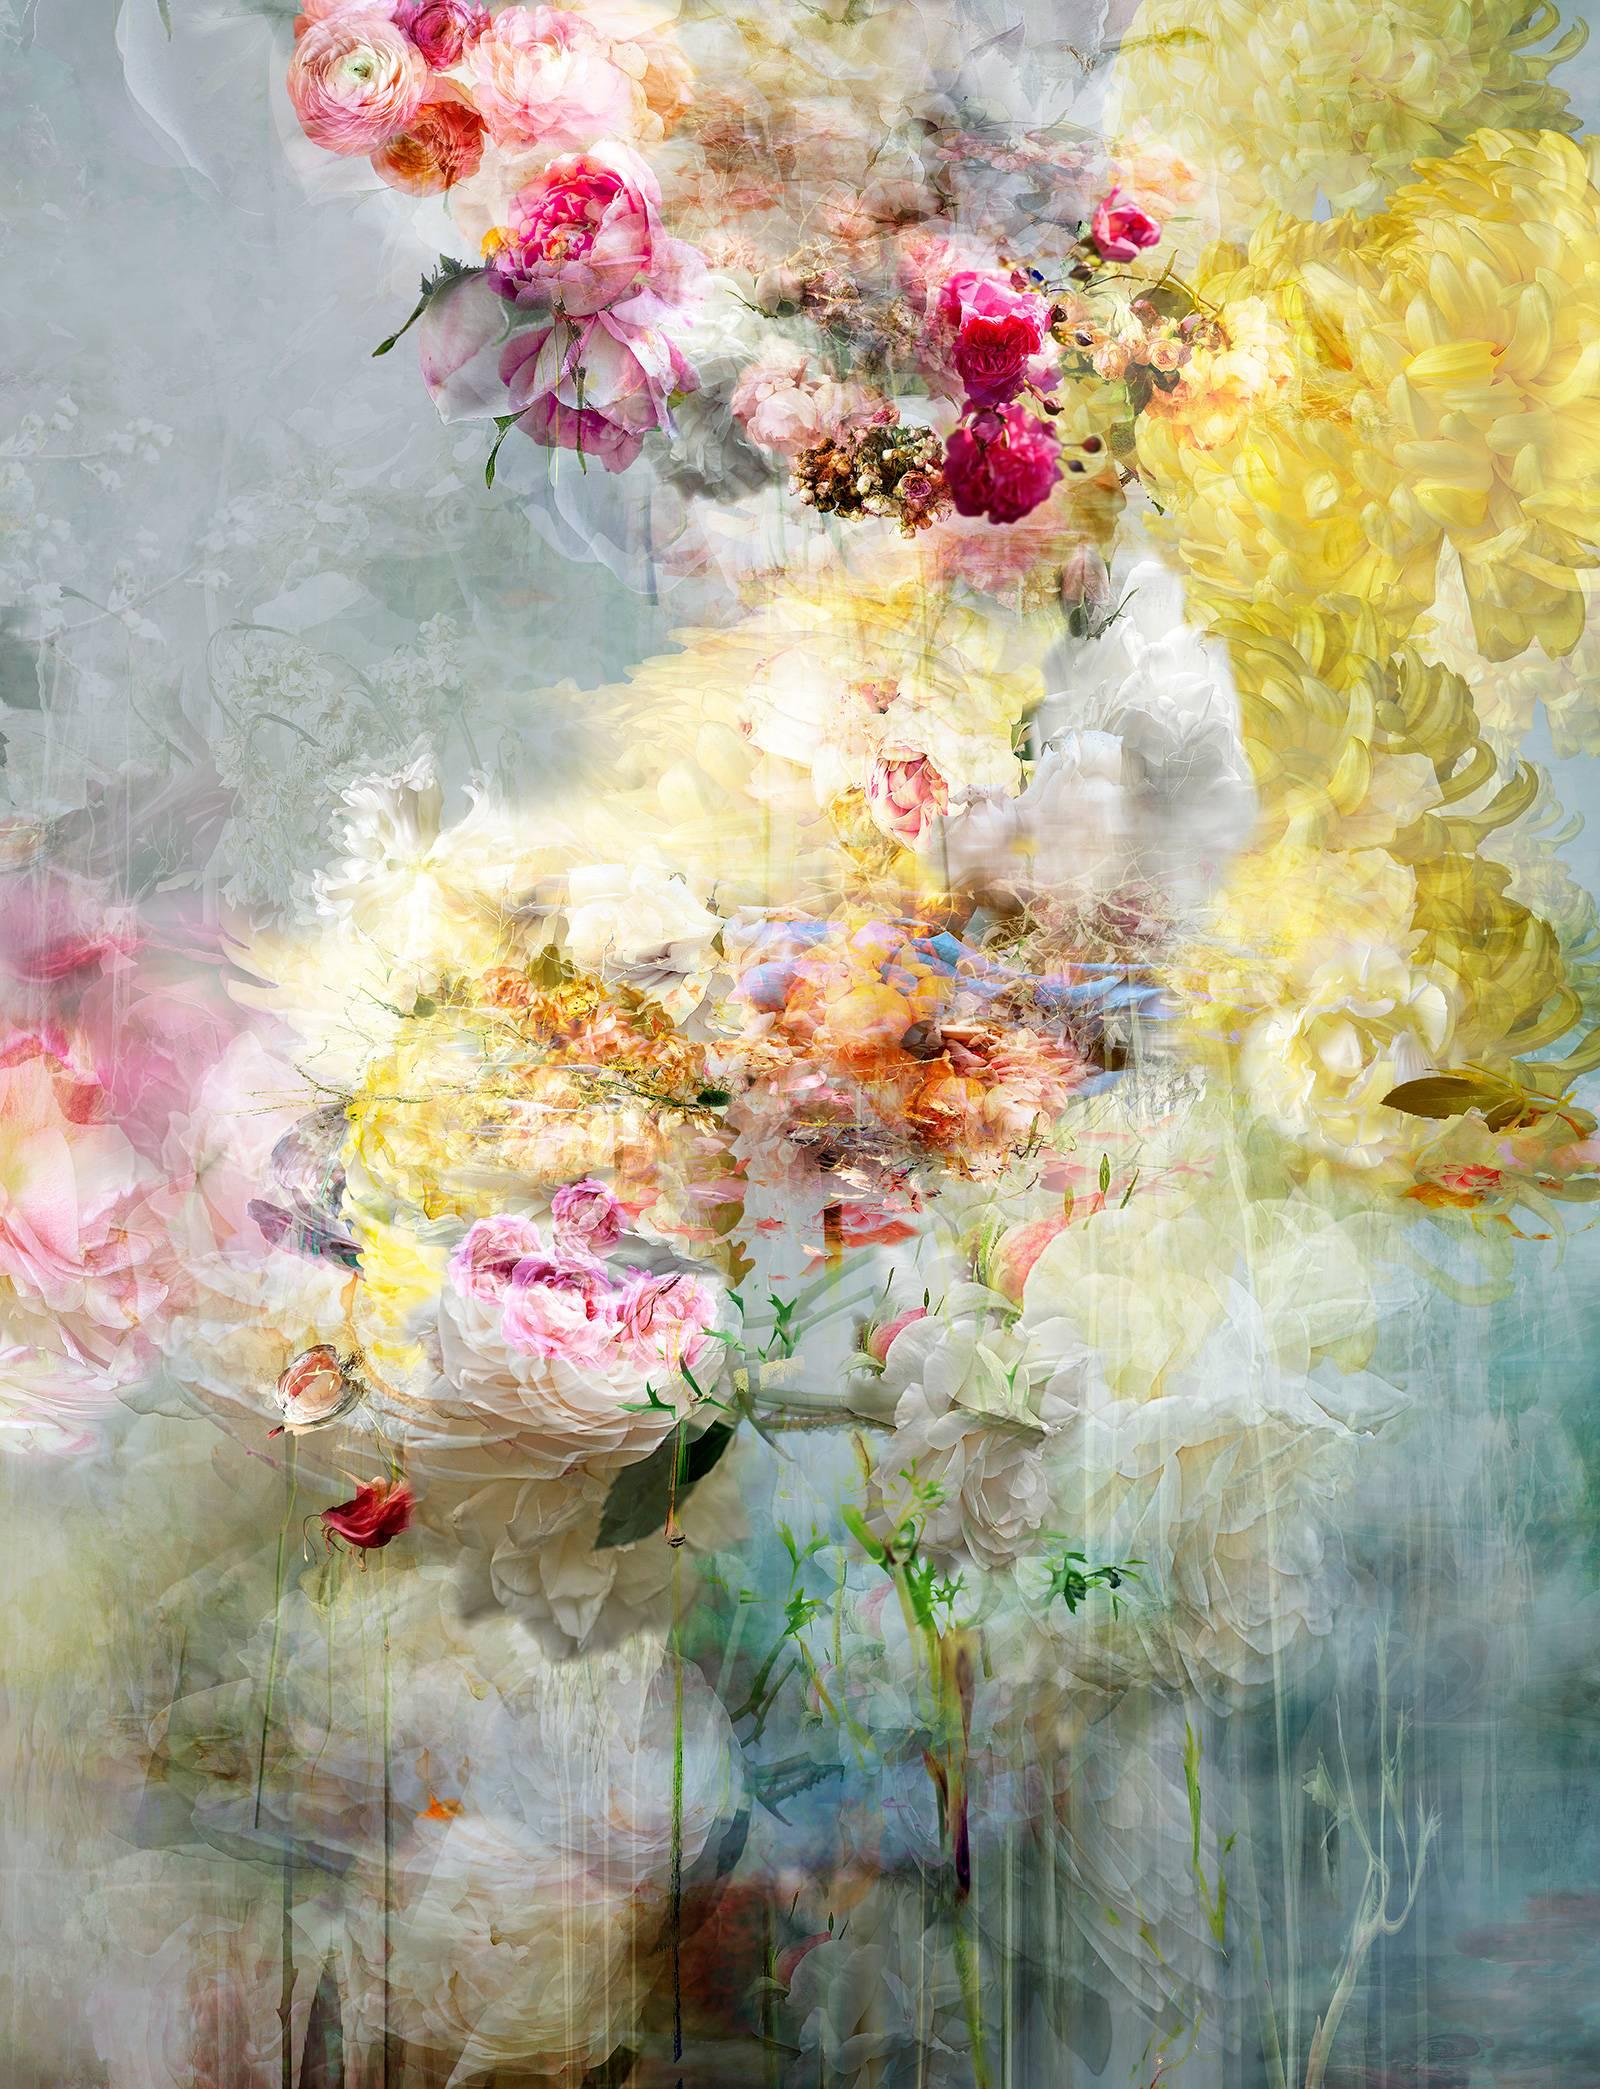 Still-Life Photograph Isabelle Menin - Songs For Dead Heroes n° 9 - montage de photos de paysages floraux abstraits aux couleurs pastel